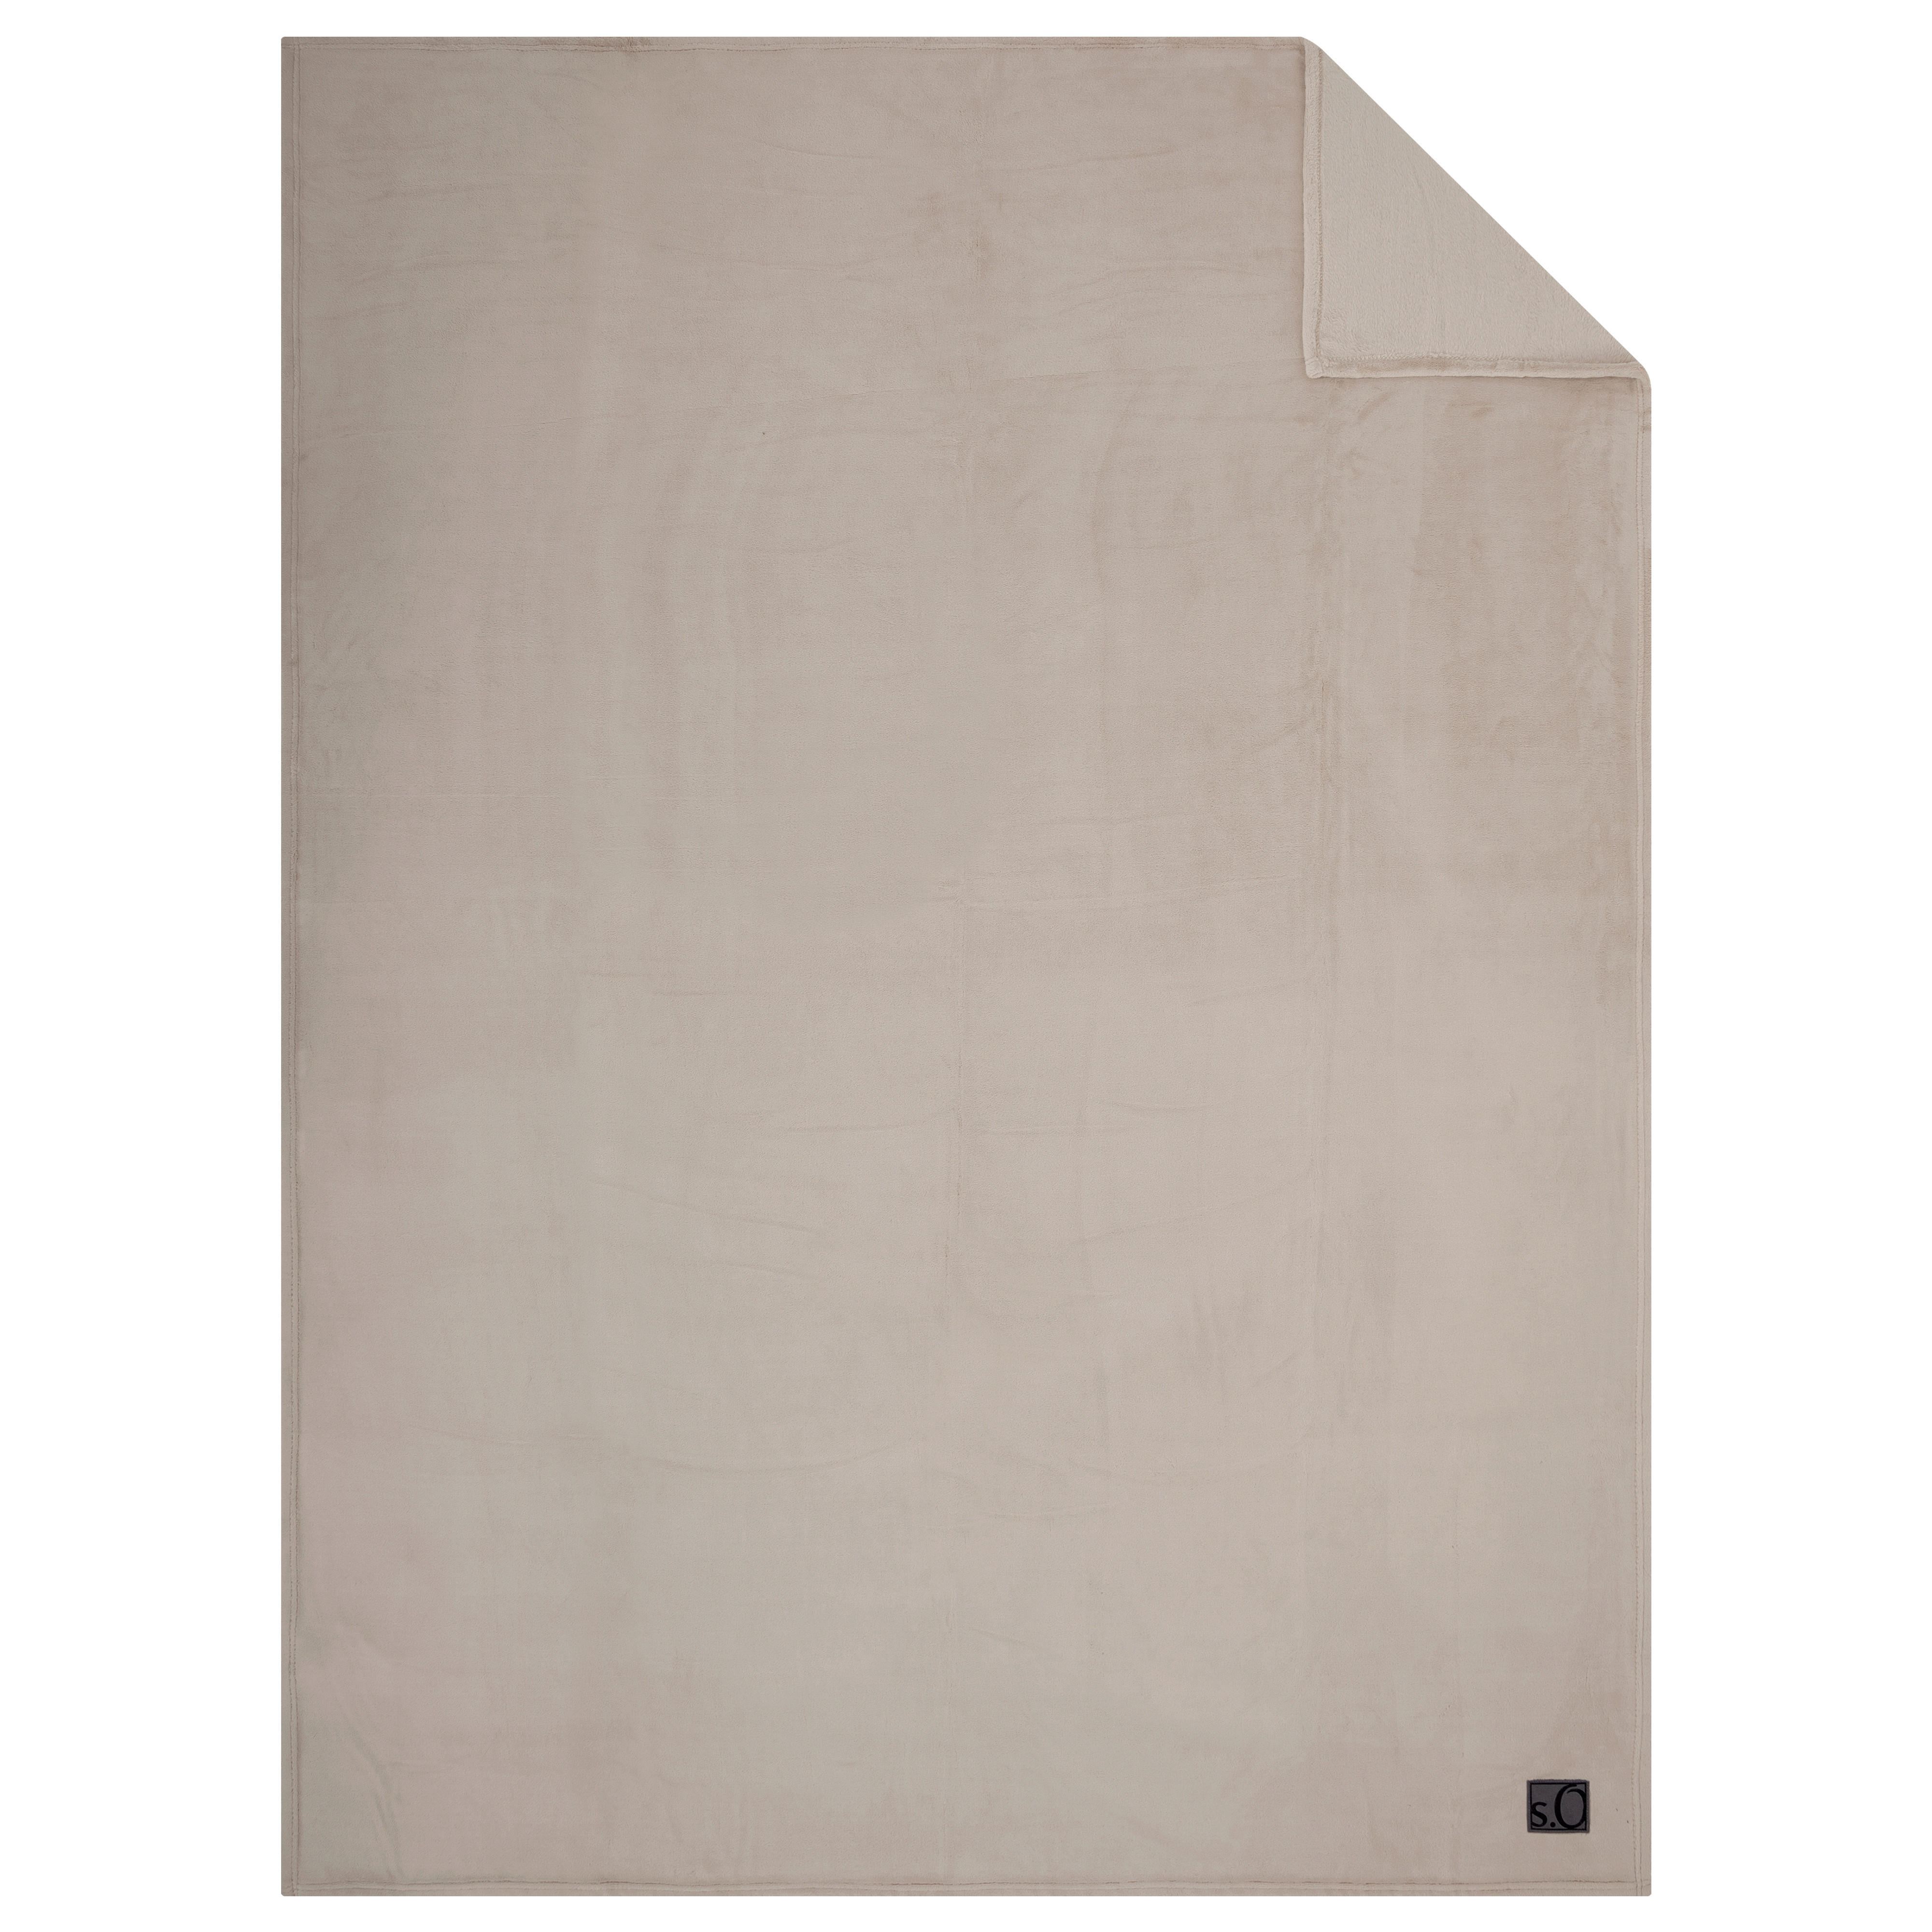 WOHNDECKE Kuschelsoft 150/200 cm  - Sandfarben, Basics, Textil (150/200cm) - S. Oliver